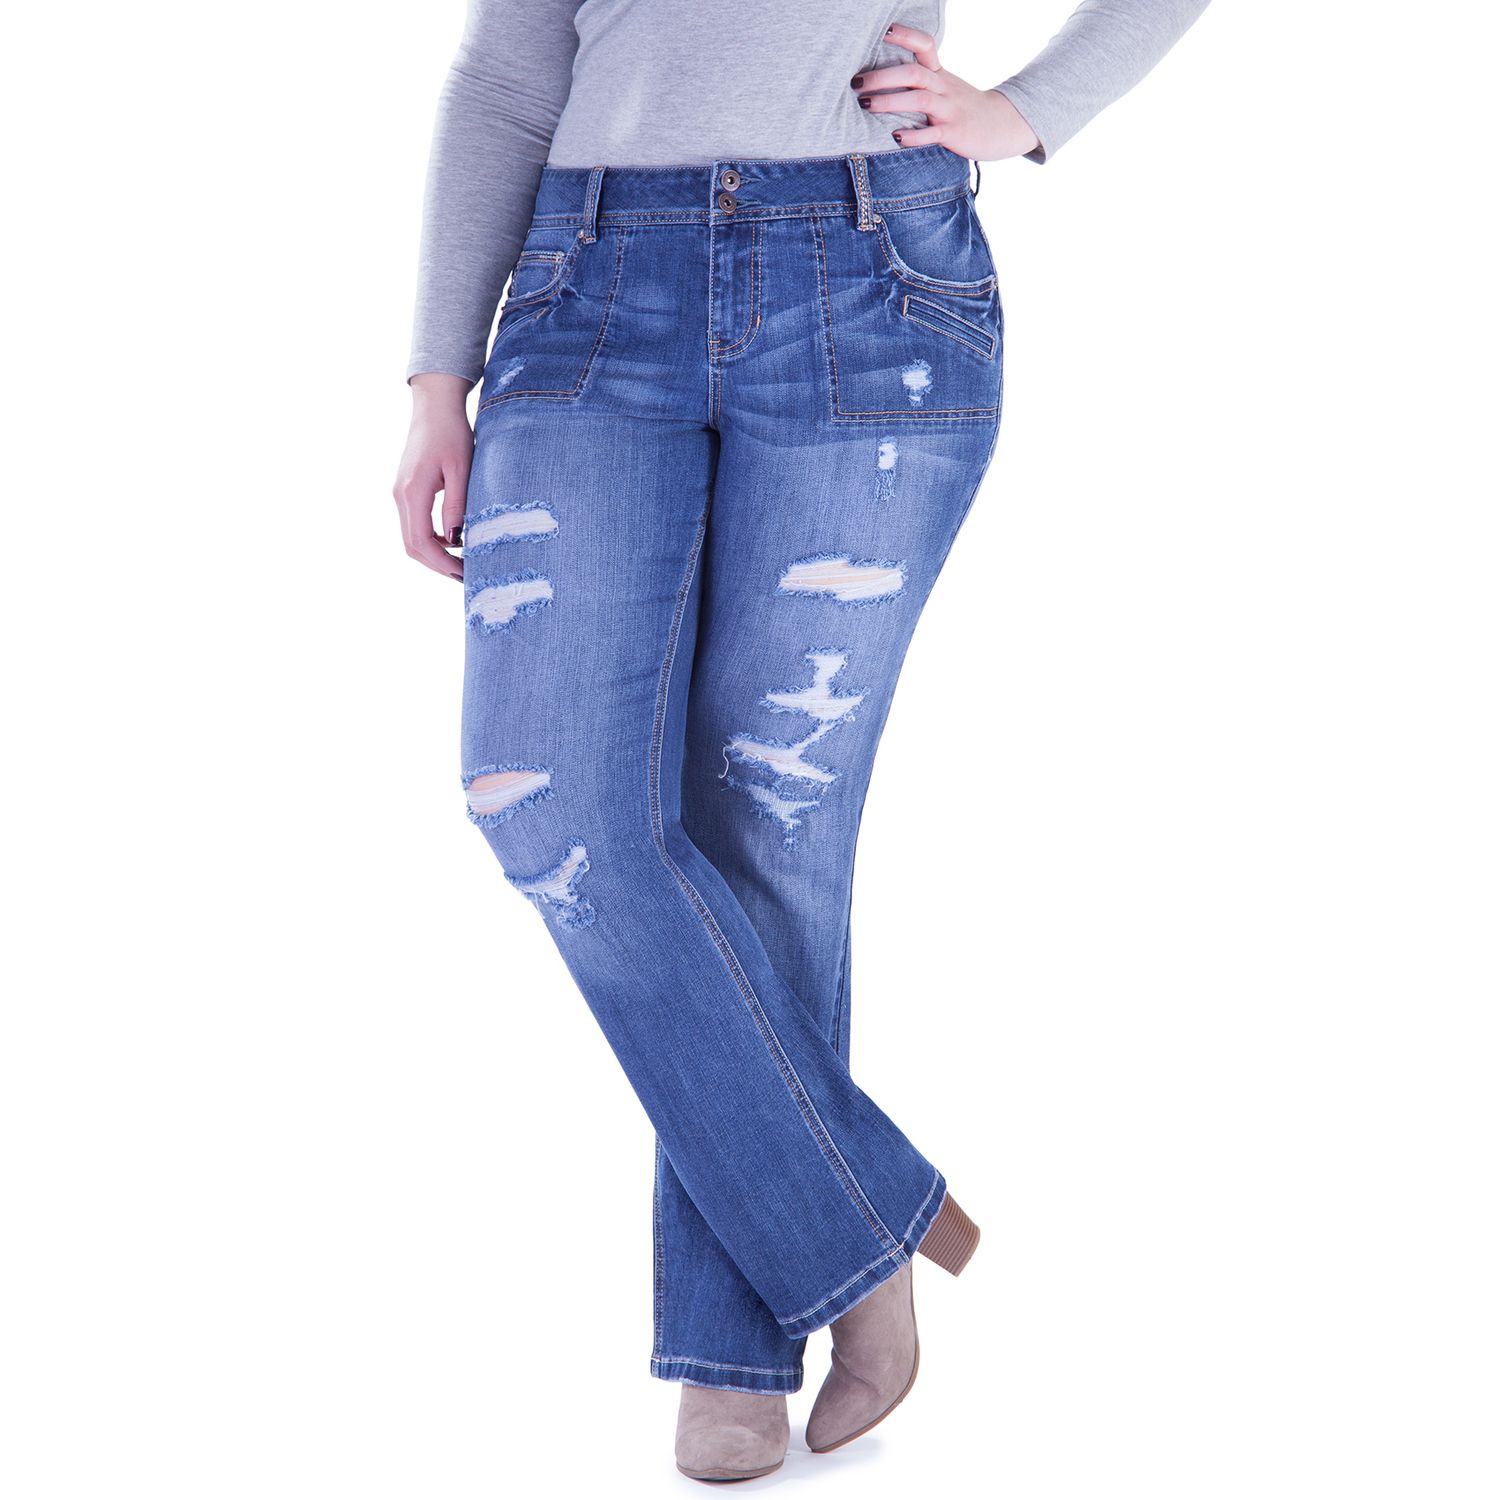 amethyst jeans plus size 24